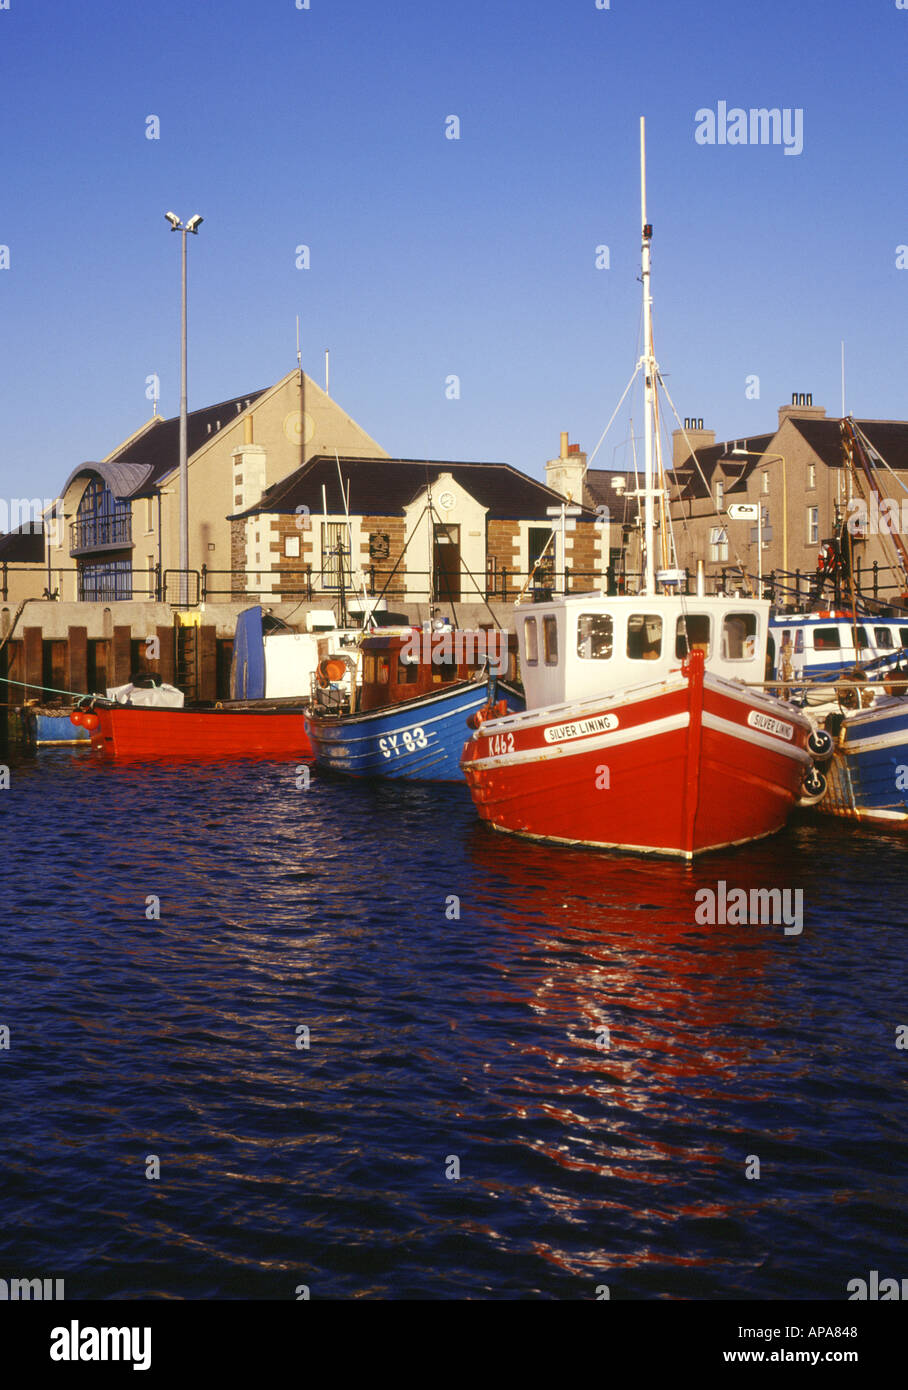 dh Harbour KIRKWALL ORKNEY Schottland Fischerboote am Wasser Kai Rotes Boot Fischerboote schottischer Hafen Stockfoto